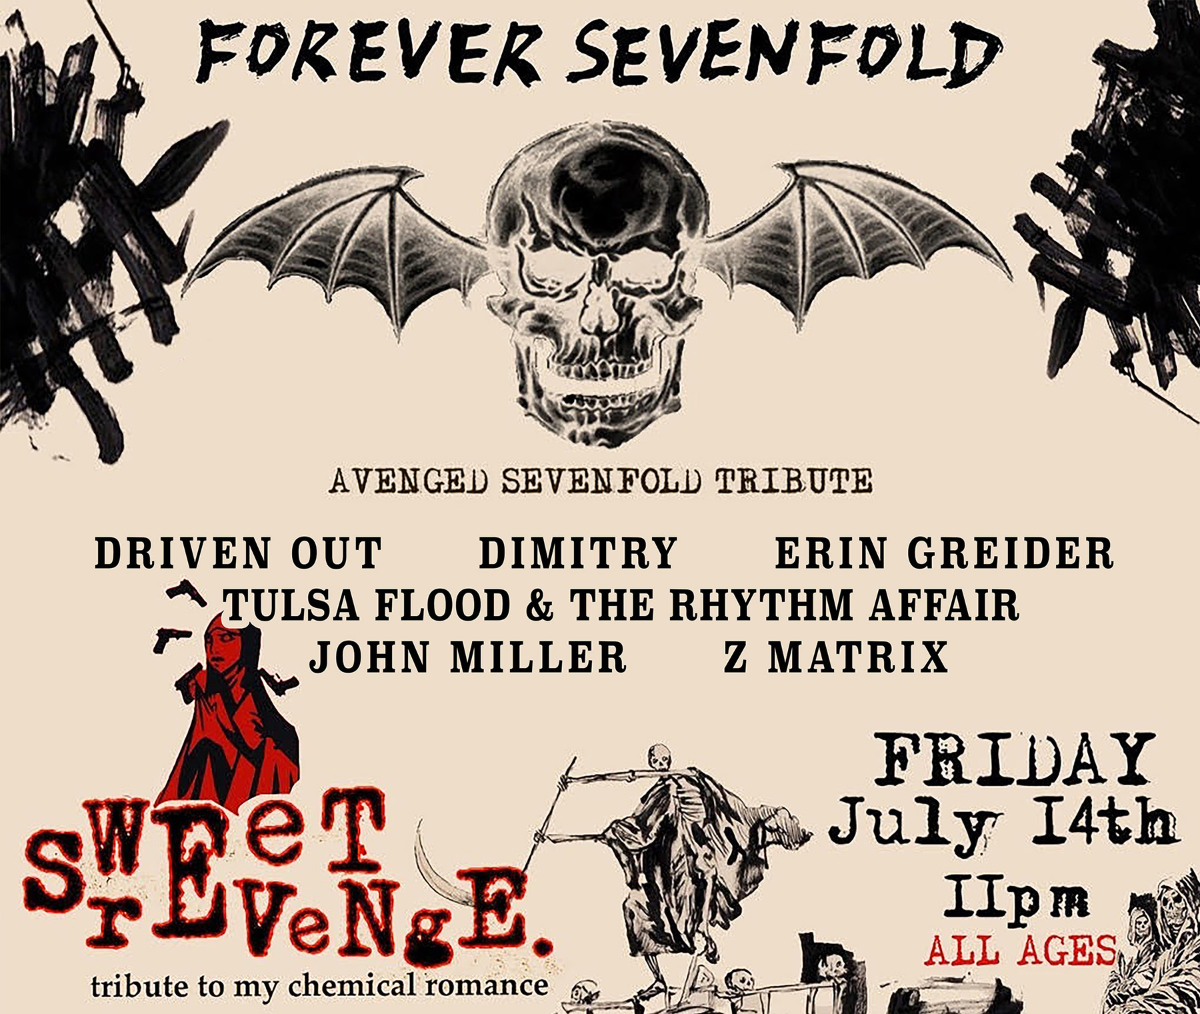 Sweet Revenge (A Tribute to My Chemical Romance), Forever Sevenfold (Avenge Sevenfold Tribute), Dimitry, Erin Greider,   Tulsa Flood & The Rhythm Affair, John Miller, Z Matrix